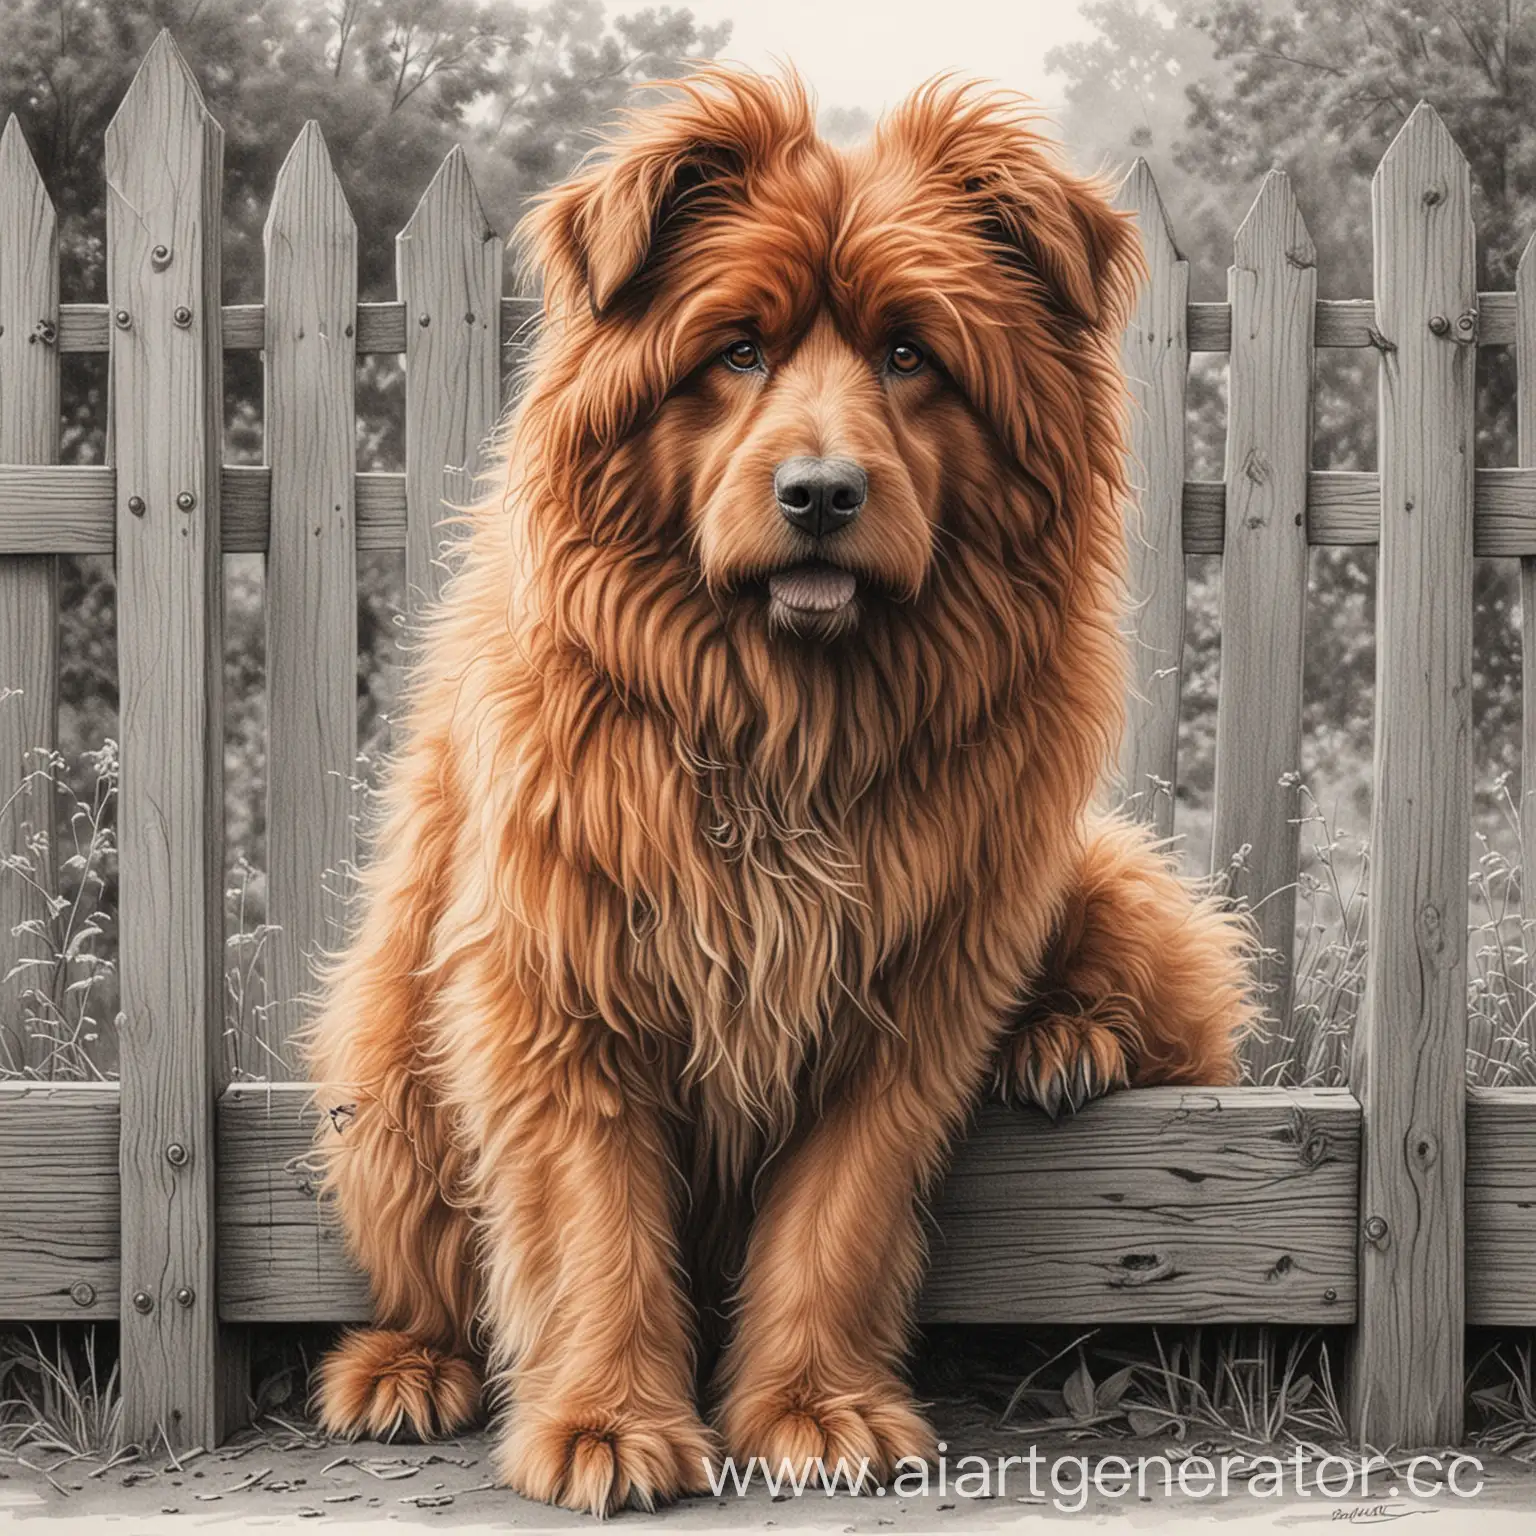 большой рыжий лохматый пес сидит у забора, карандашный рисунок
